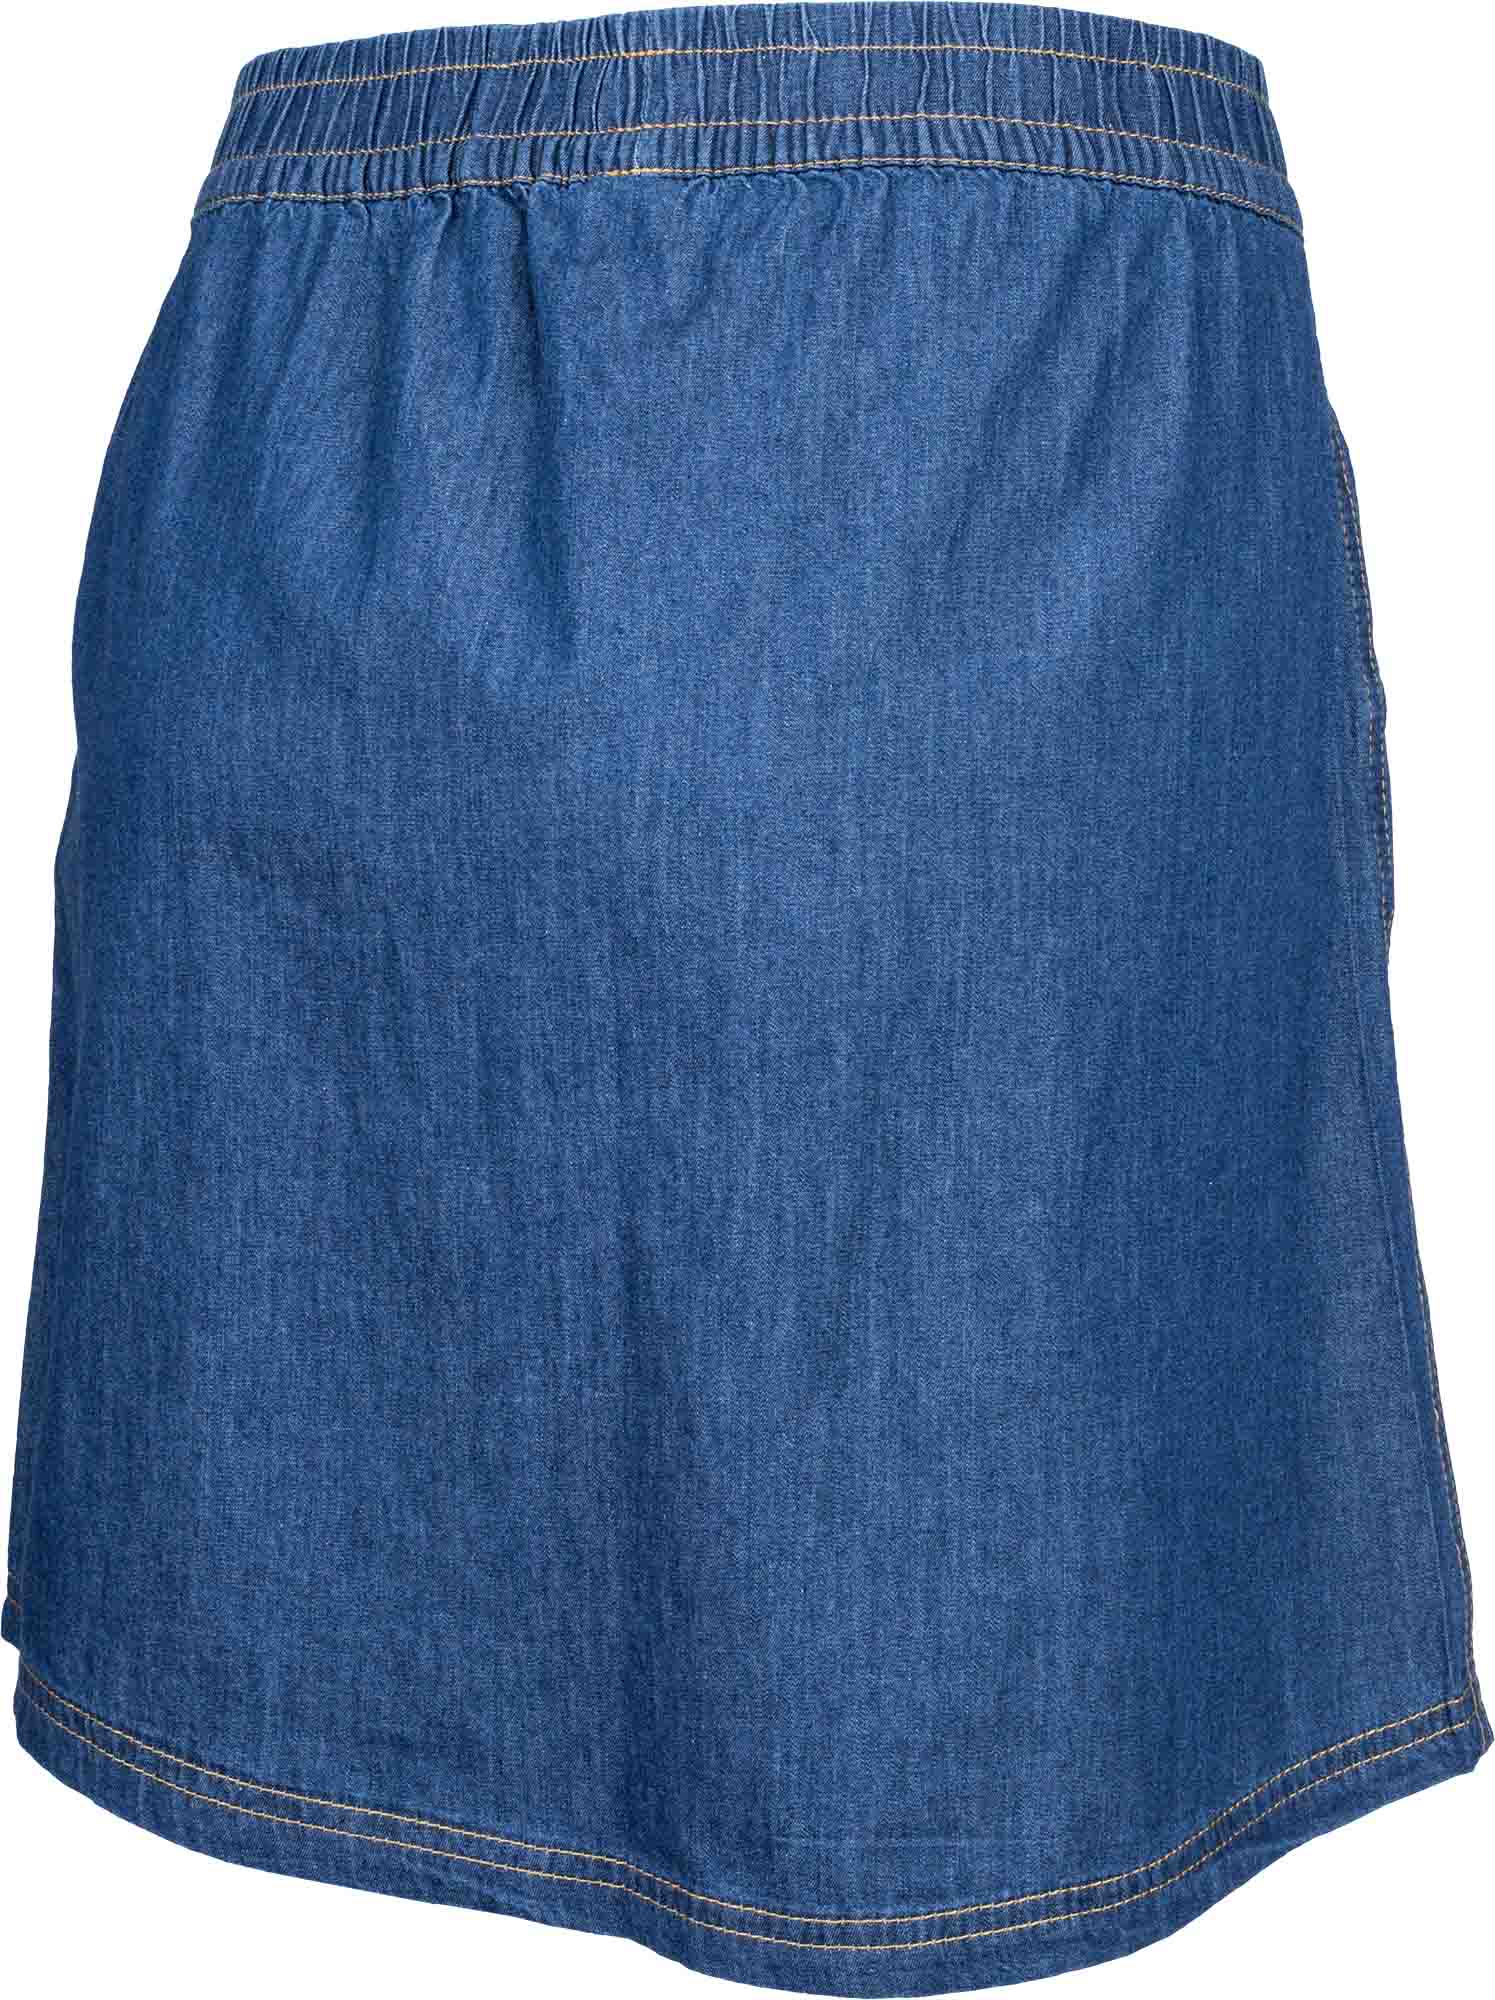 Women's jean skirt